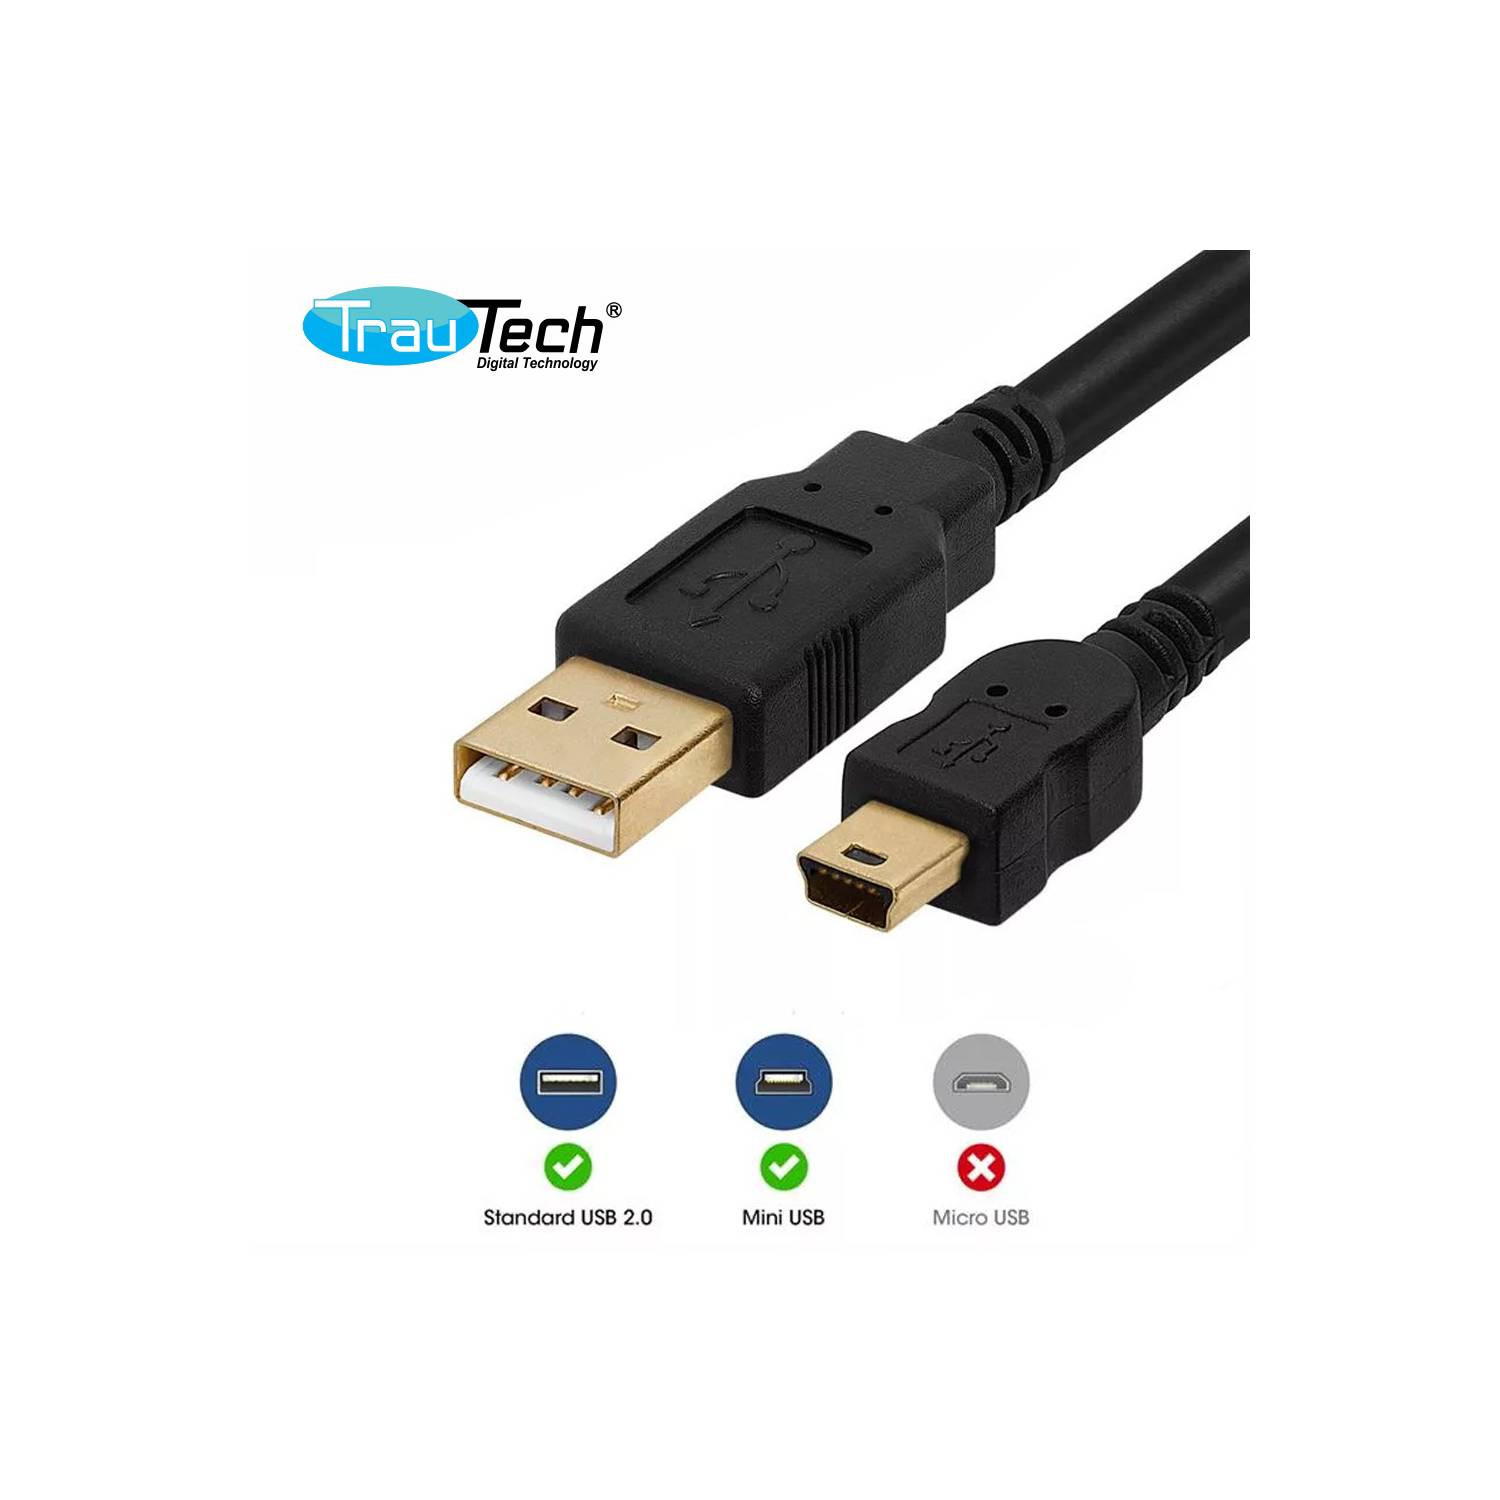 Cable USB 2.0 a Mini USB V3 5 pines 1.8 Metros con Filtro Trautech